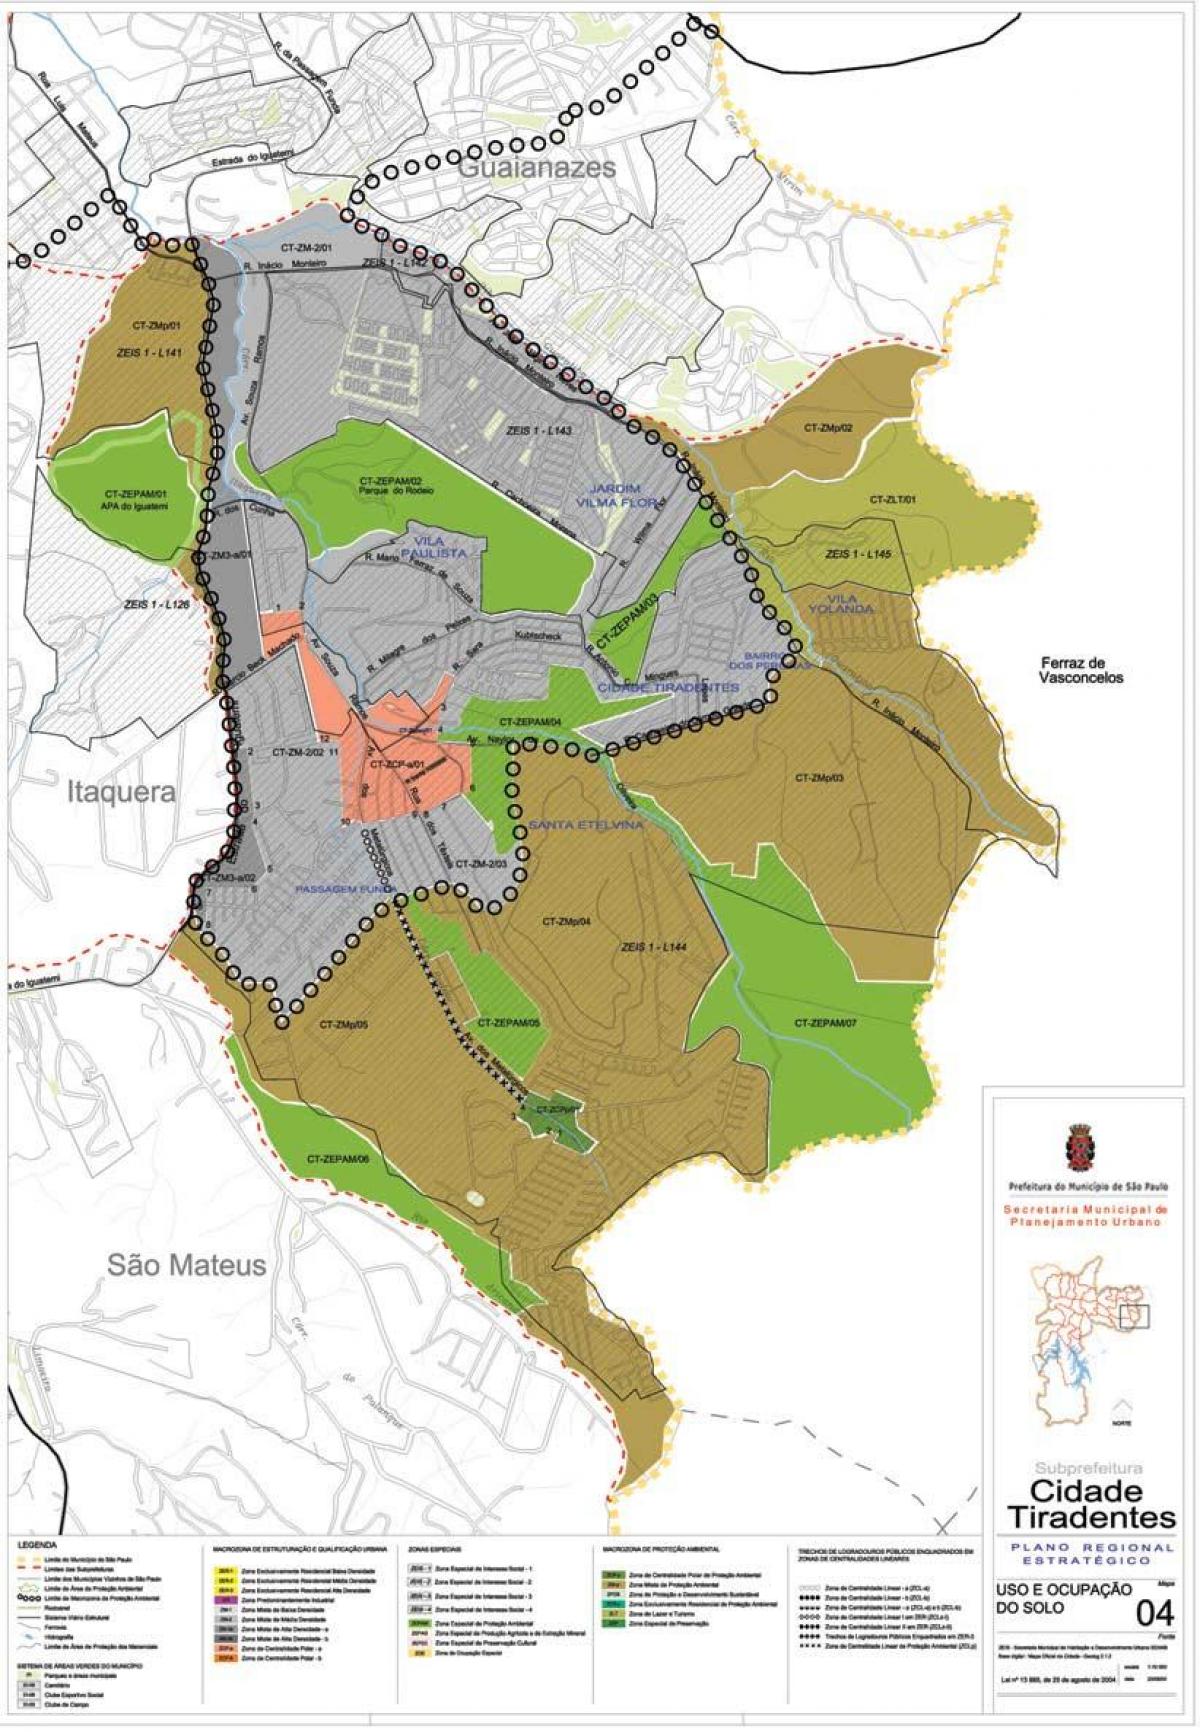 Mapa de Cidade Tiradentes São Paulo - Ocupação do solo